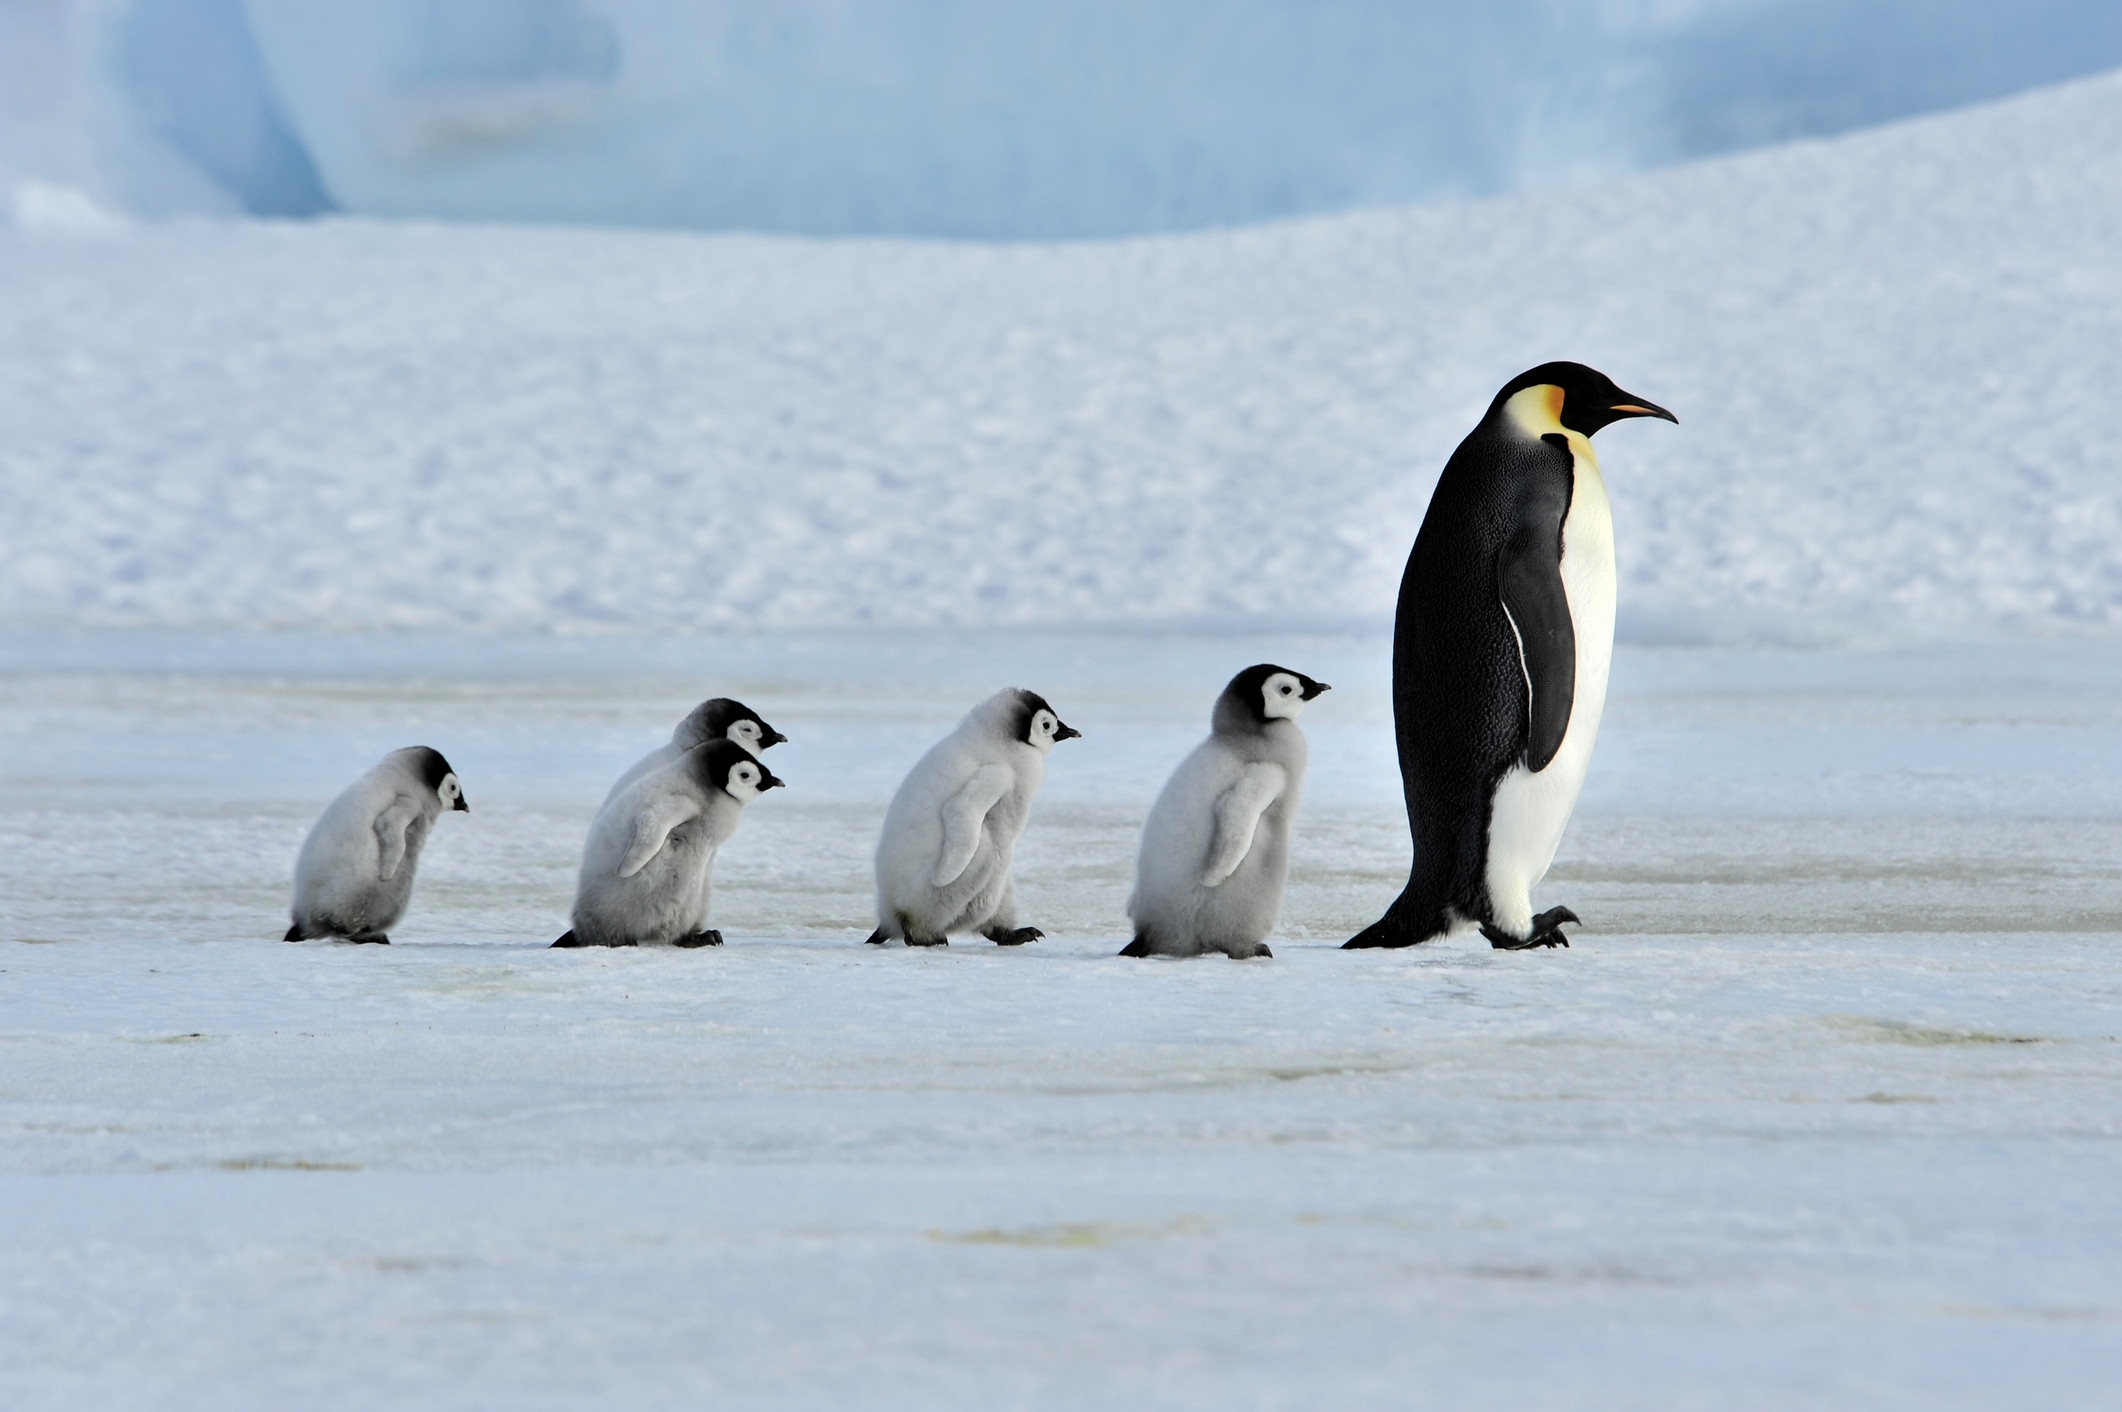 ペンギンの壁紙,ペンギン,鳥,飛べない鳥,皇帝ペンギン,北極